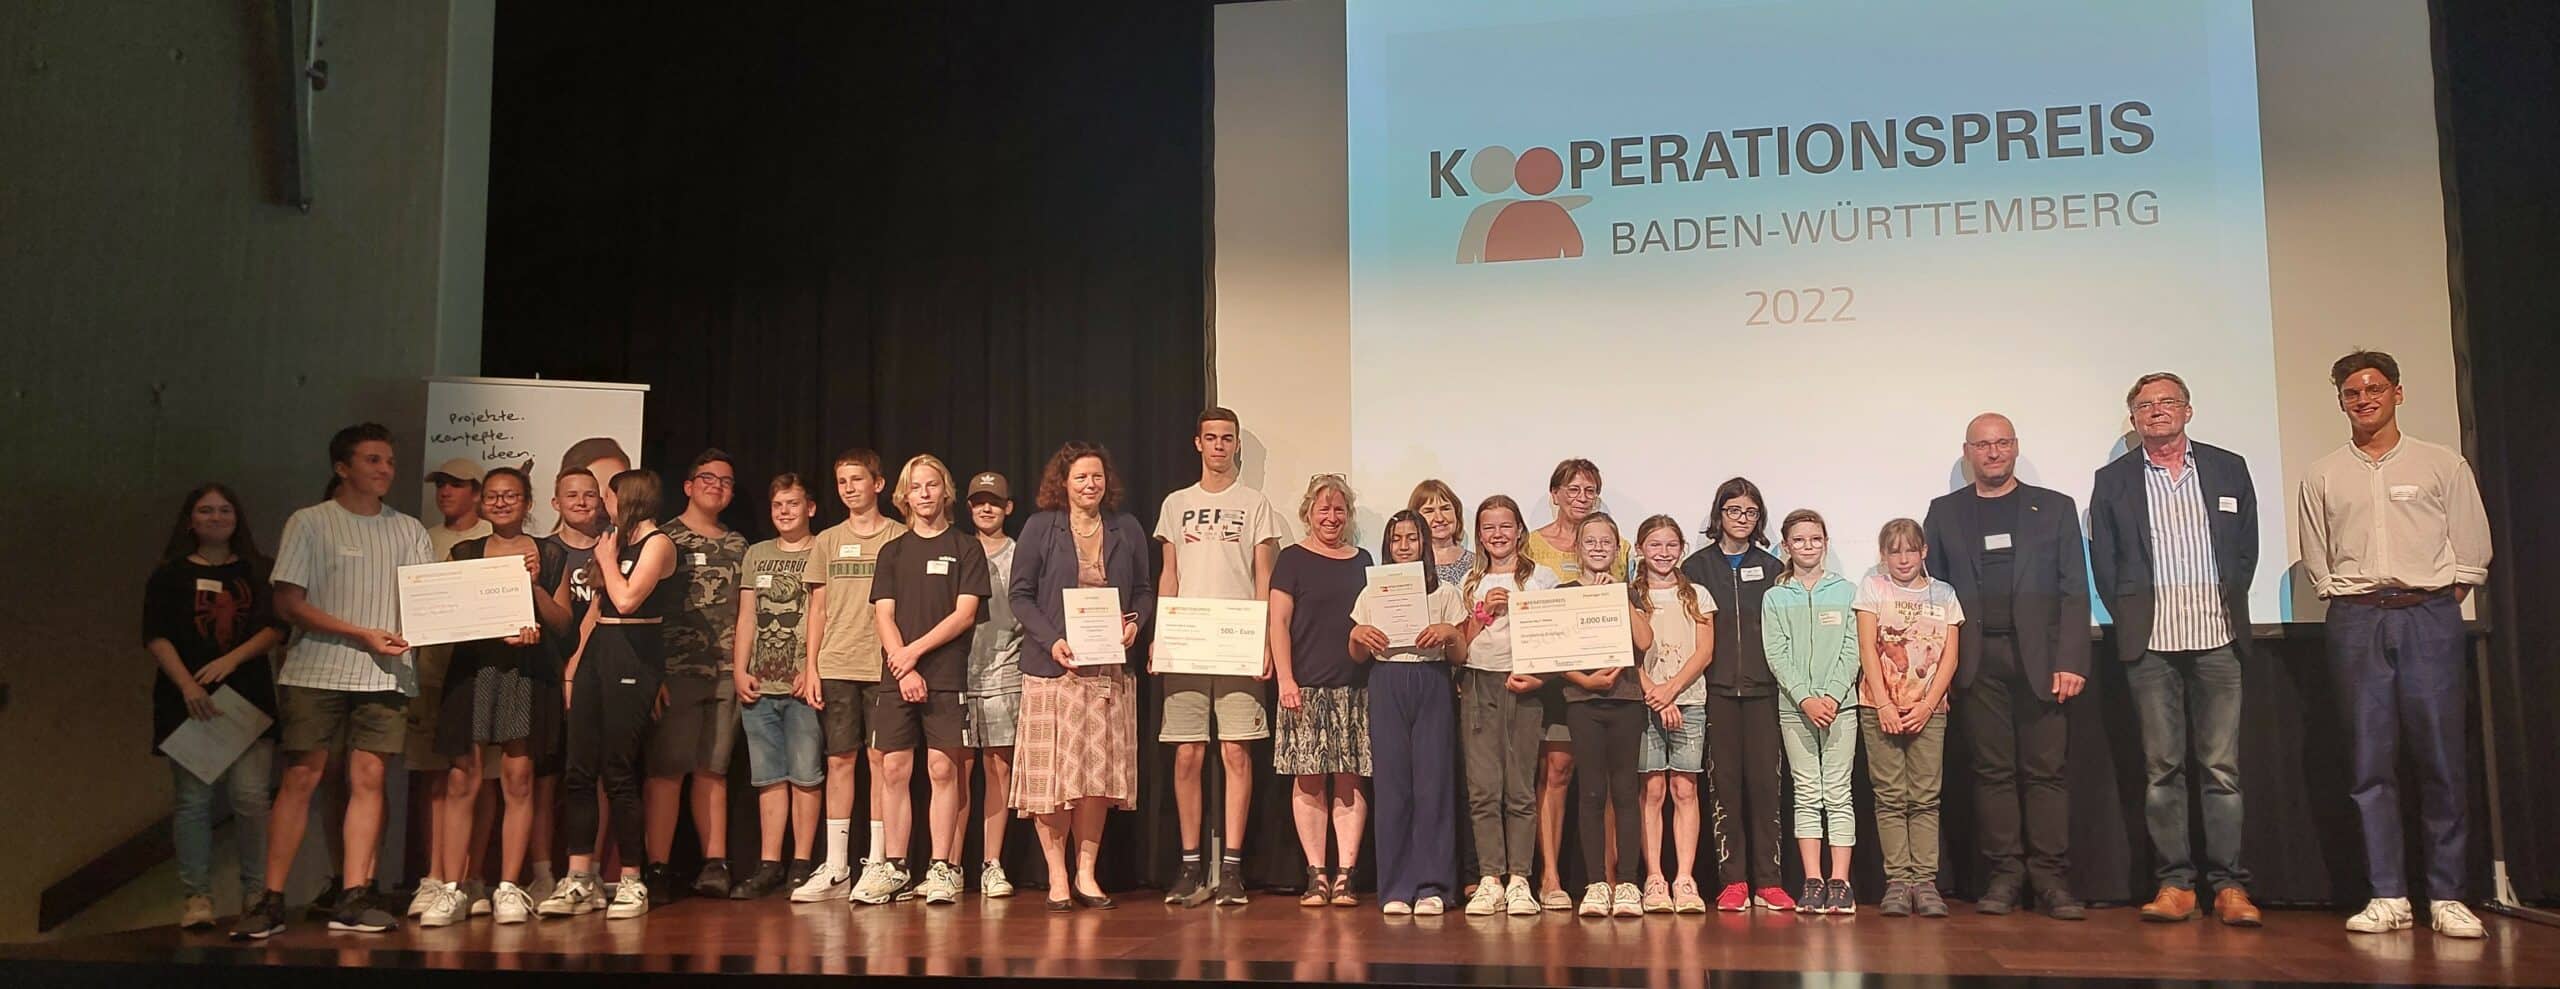 Jugendbegleiter-Schulen mit dem Kooperationspreis Baden-Württemberg ausgezeichnet